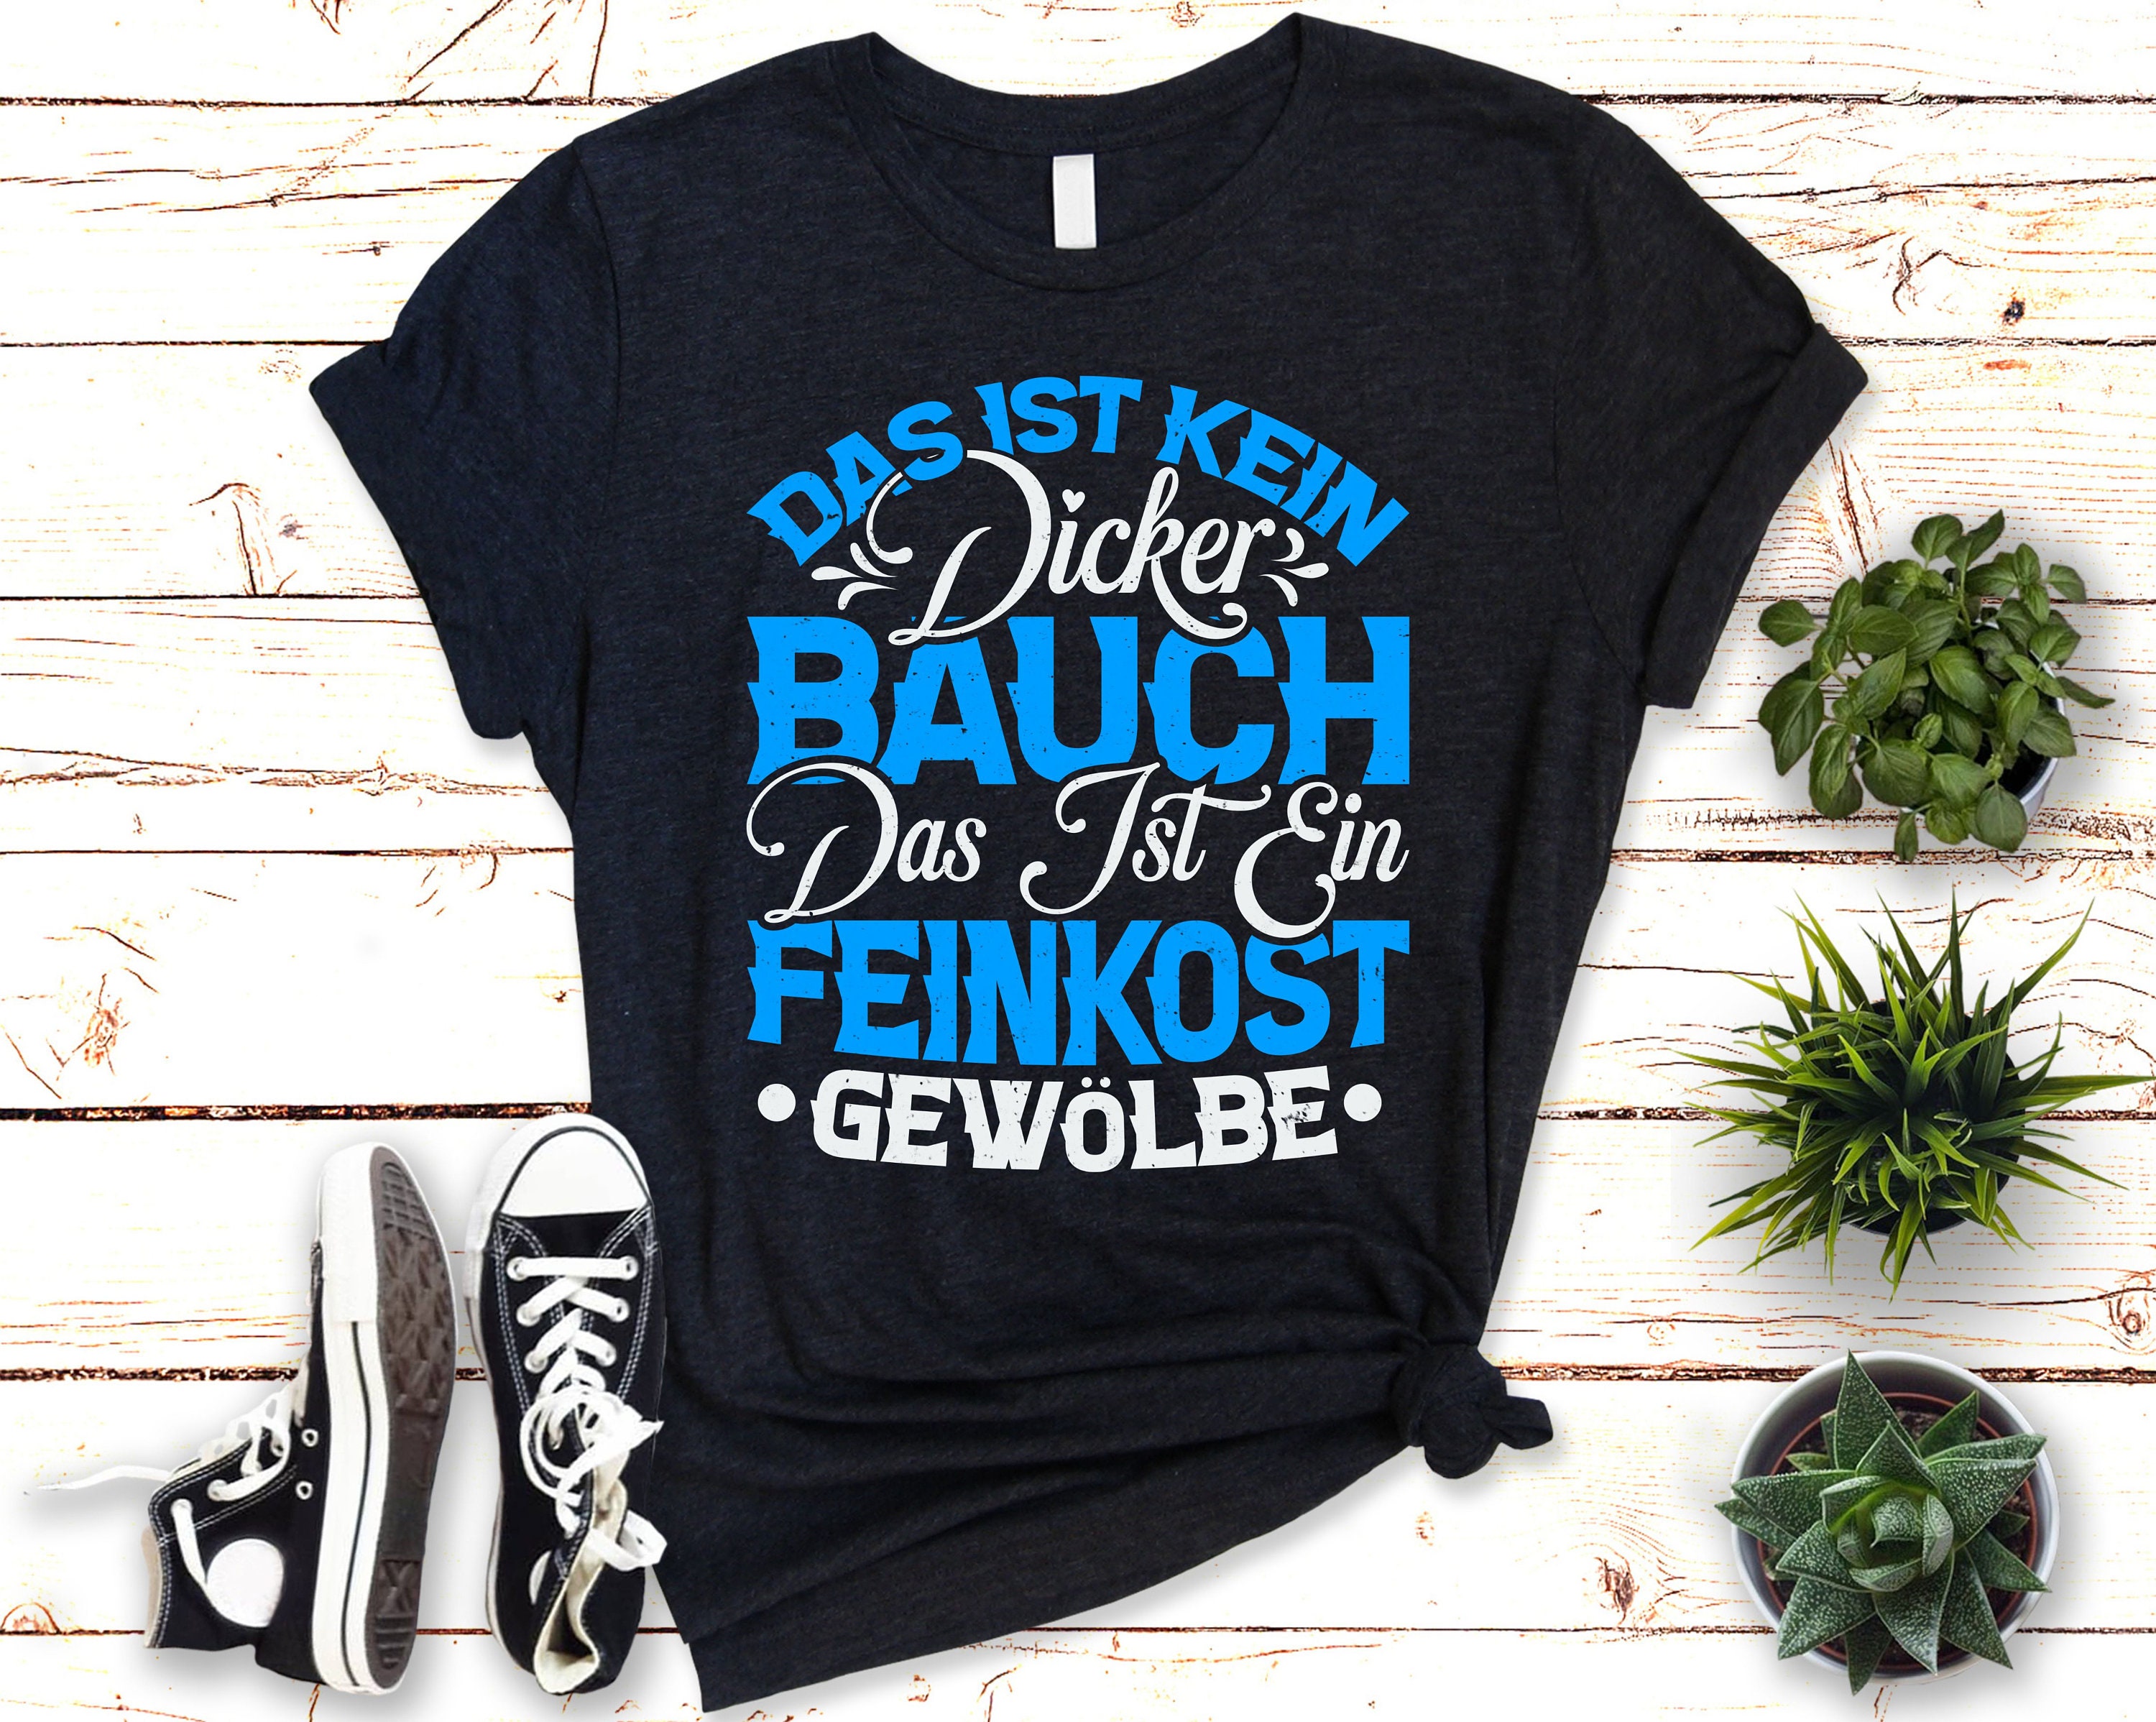 Kein dicker Bauch T-Shirt Feinkost Gewölbe Spruch - Etsy.de